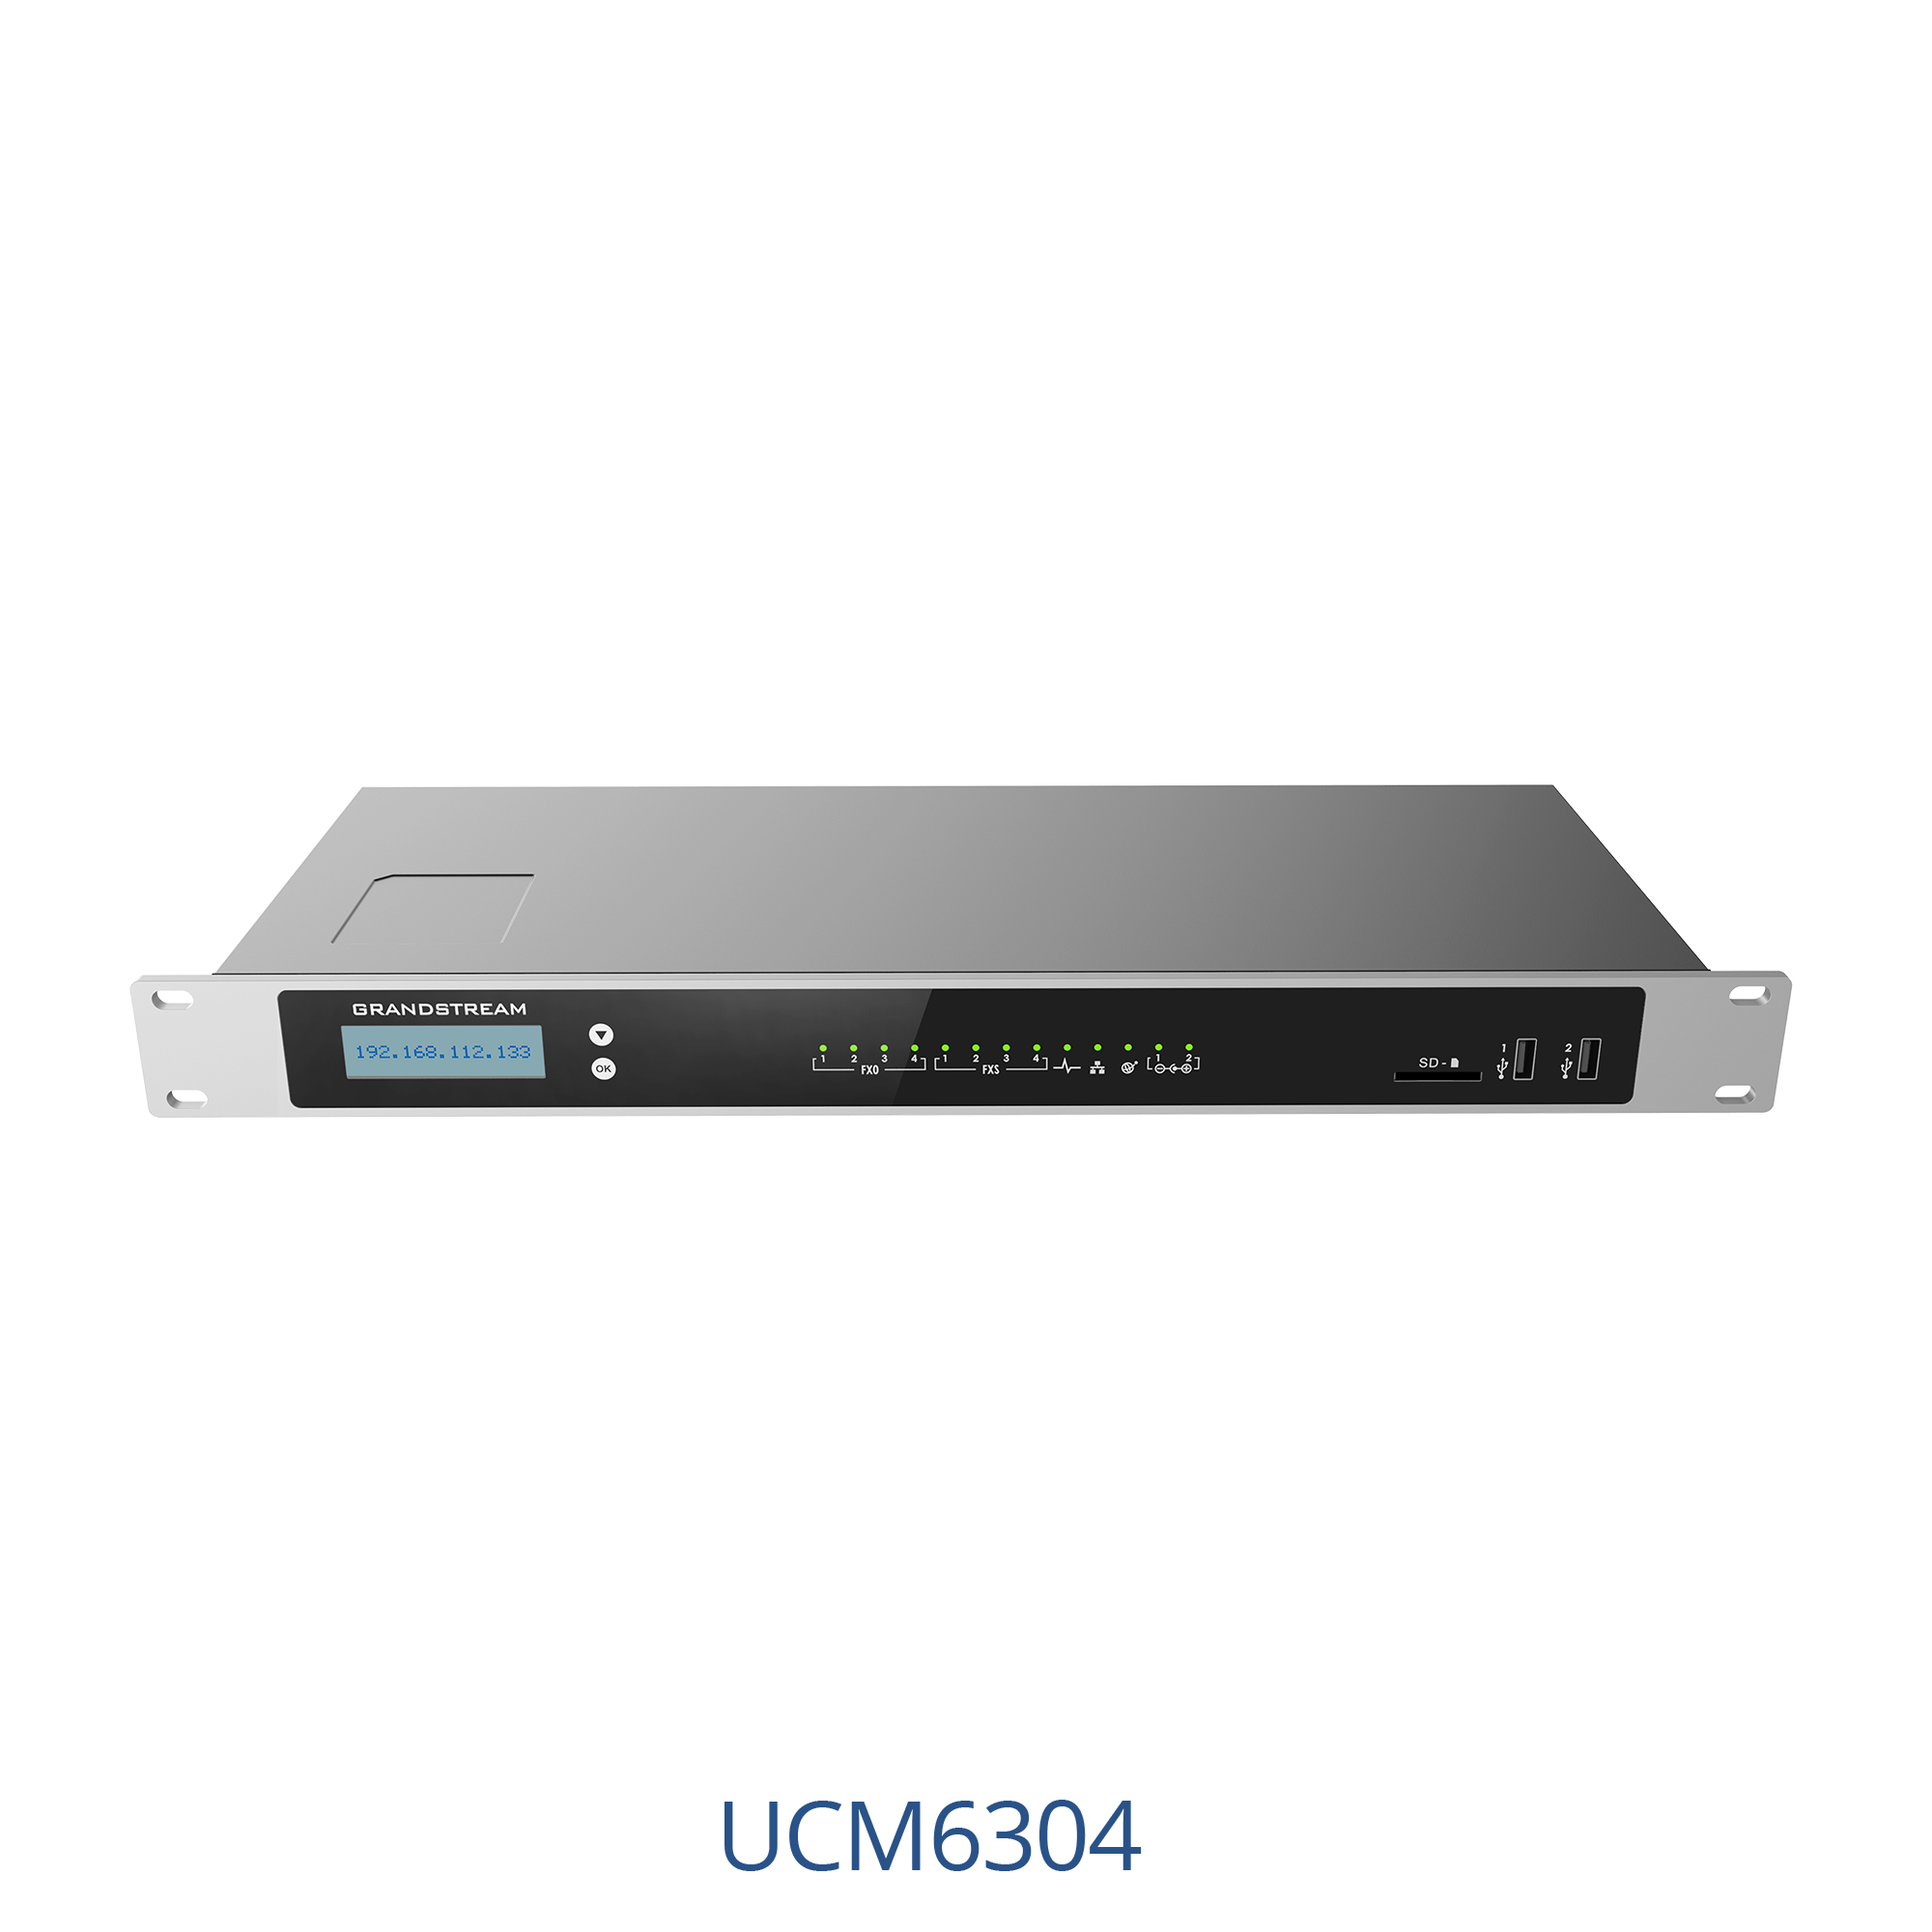 Grandstream-UCM6302-IP-PBX main view